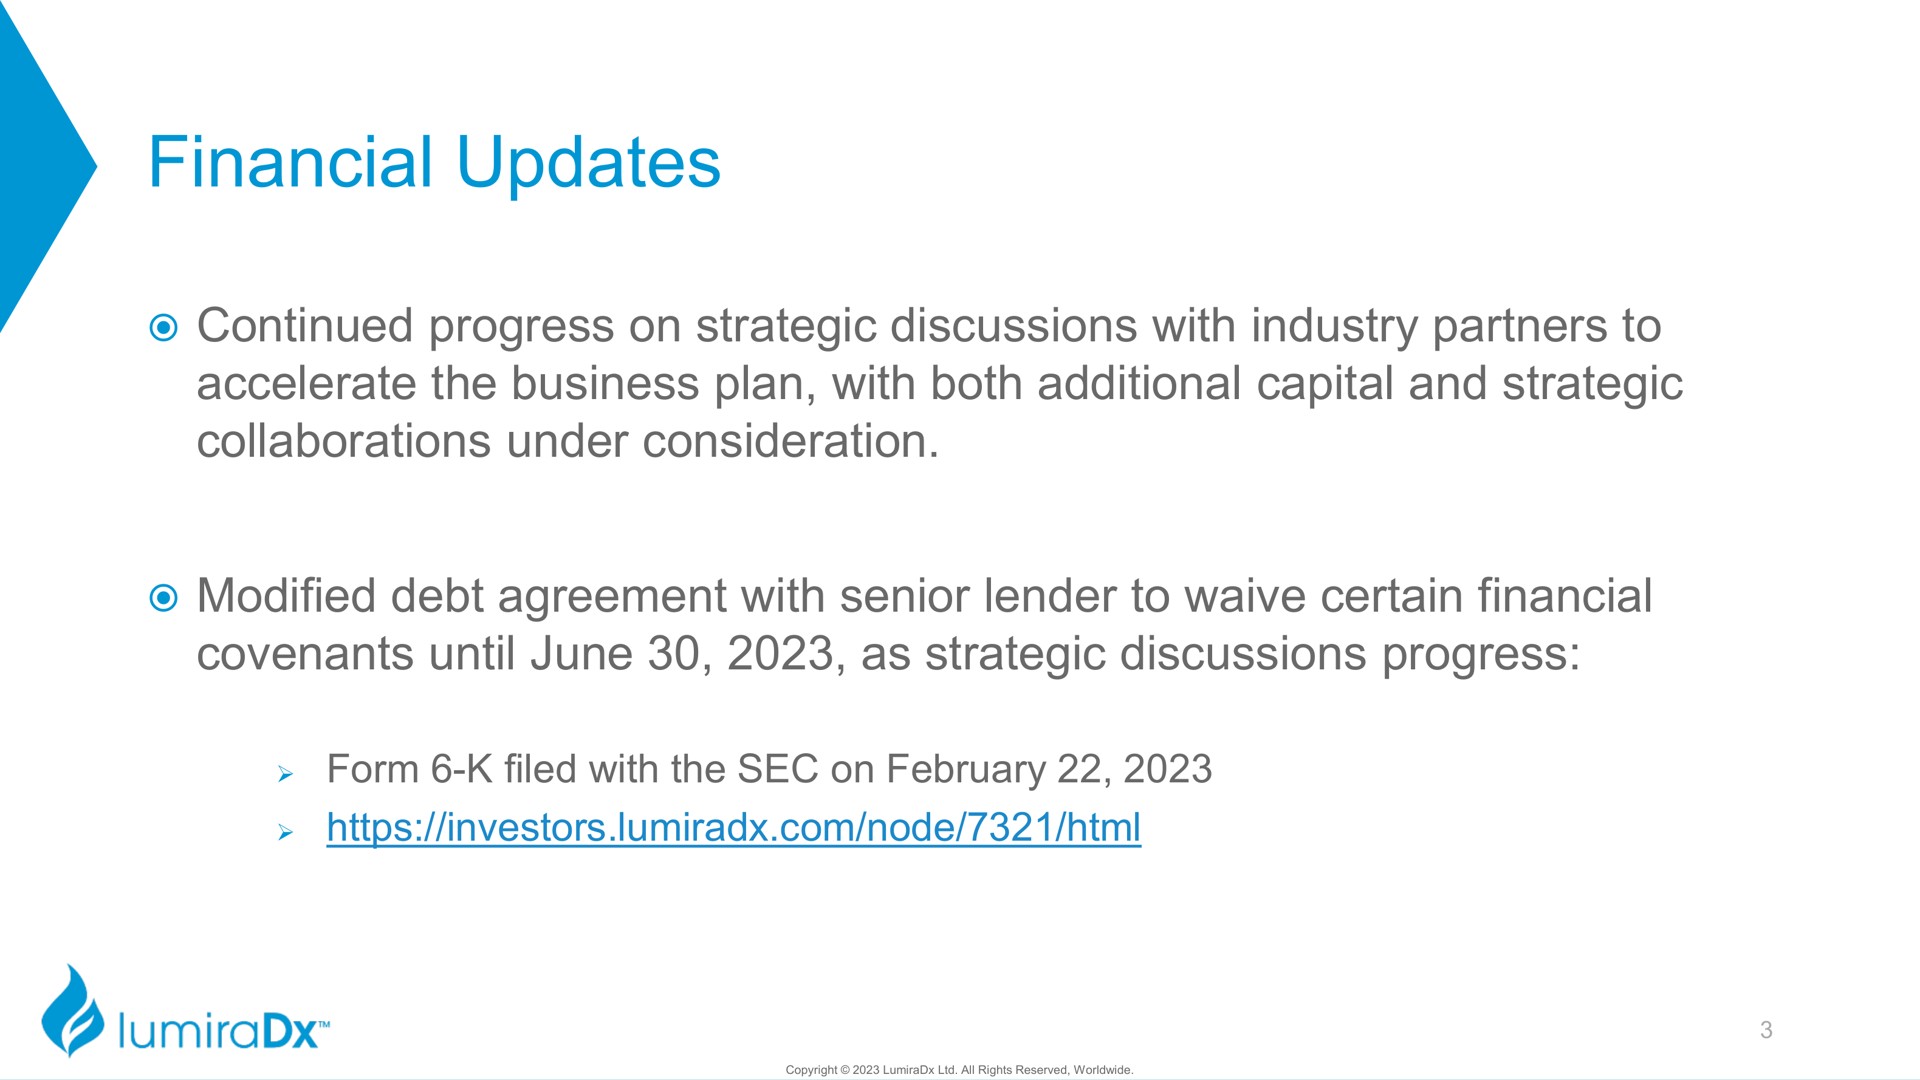 financial updates | LumiraDx